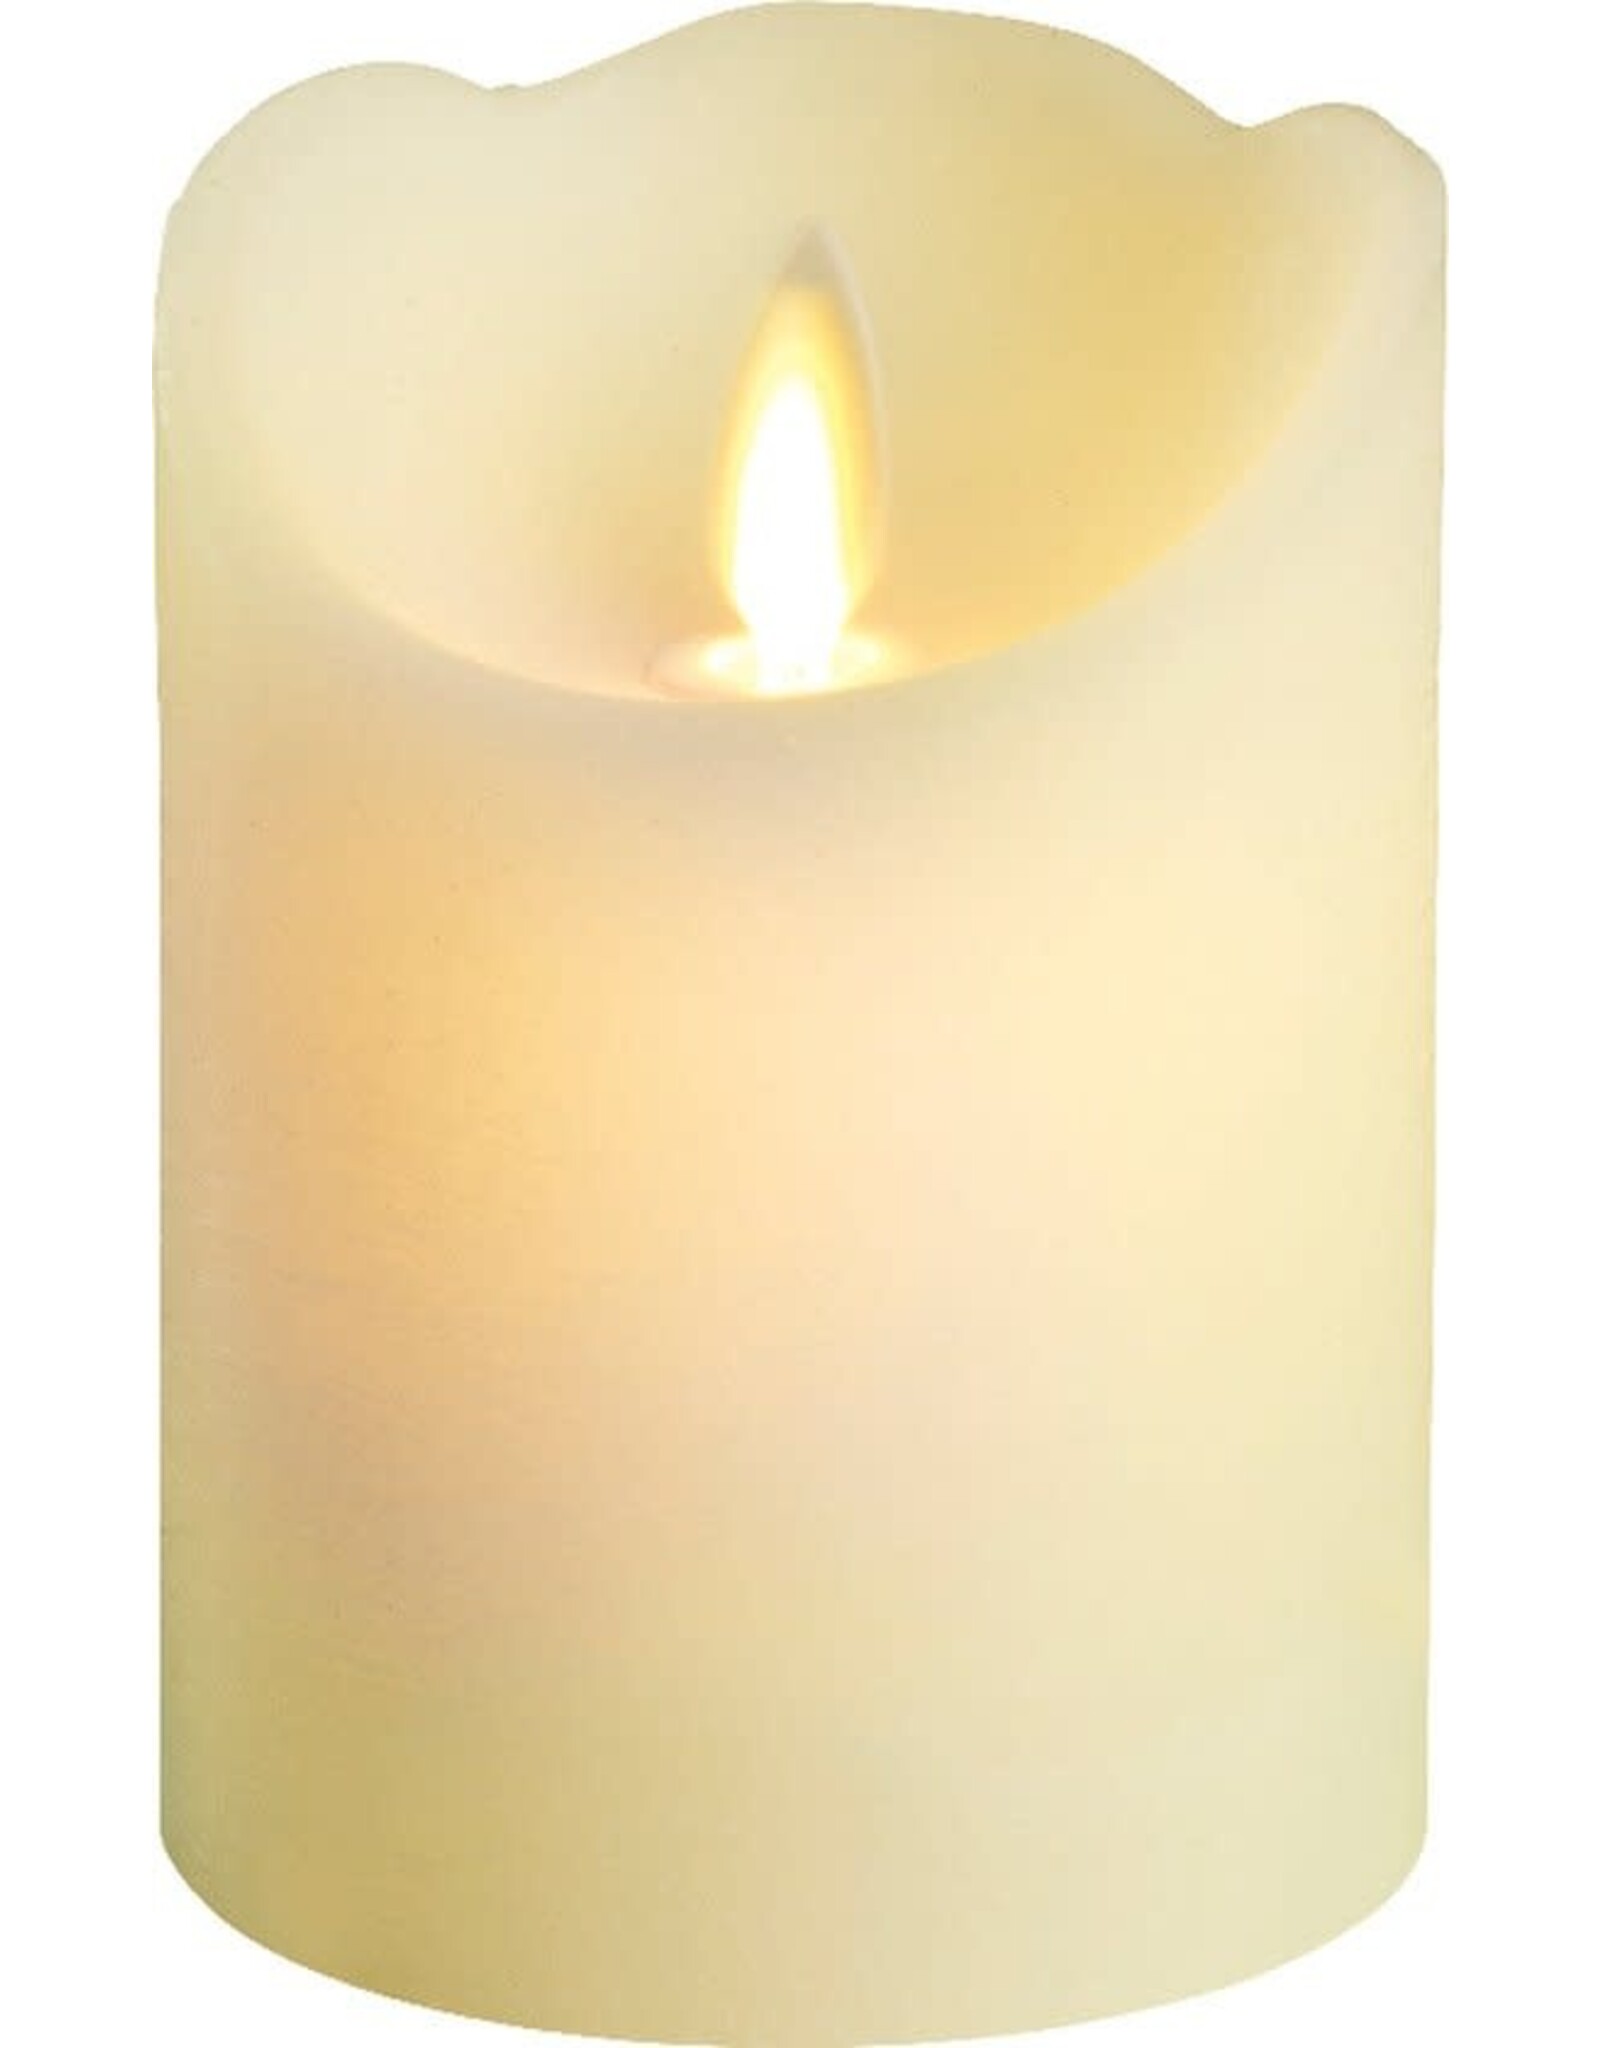 lumineo LED kaars/stompkaars creme wit 10 cm flakkerend - Kerst diner tafeldecoratie - Home deco kaarsen